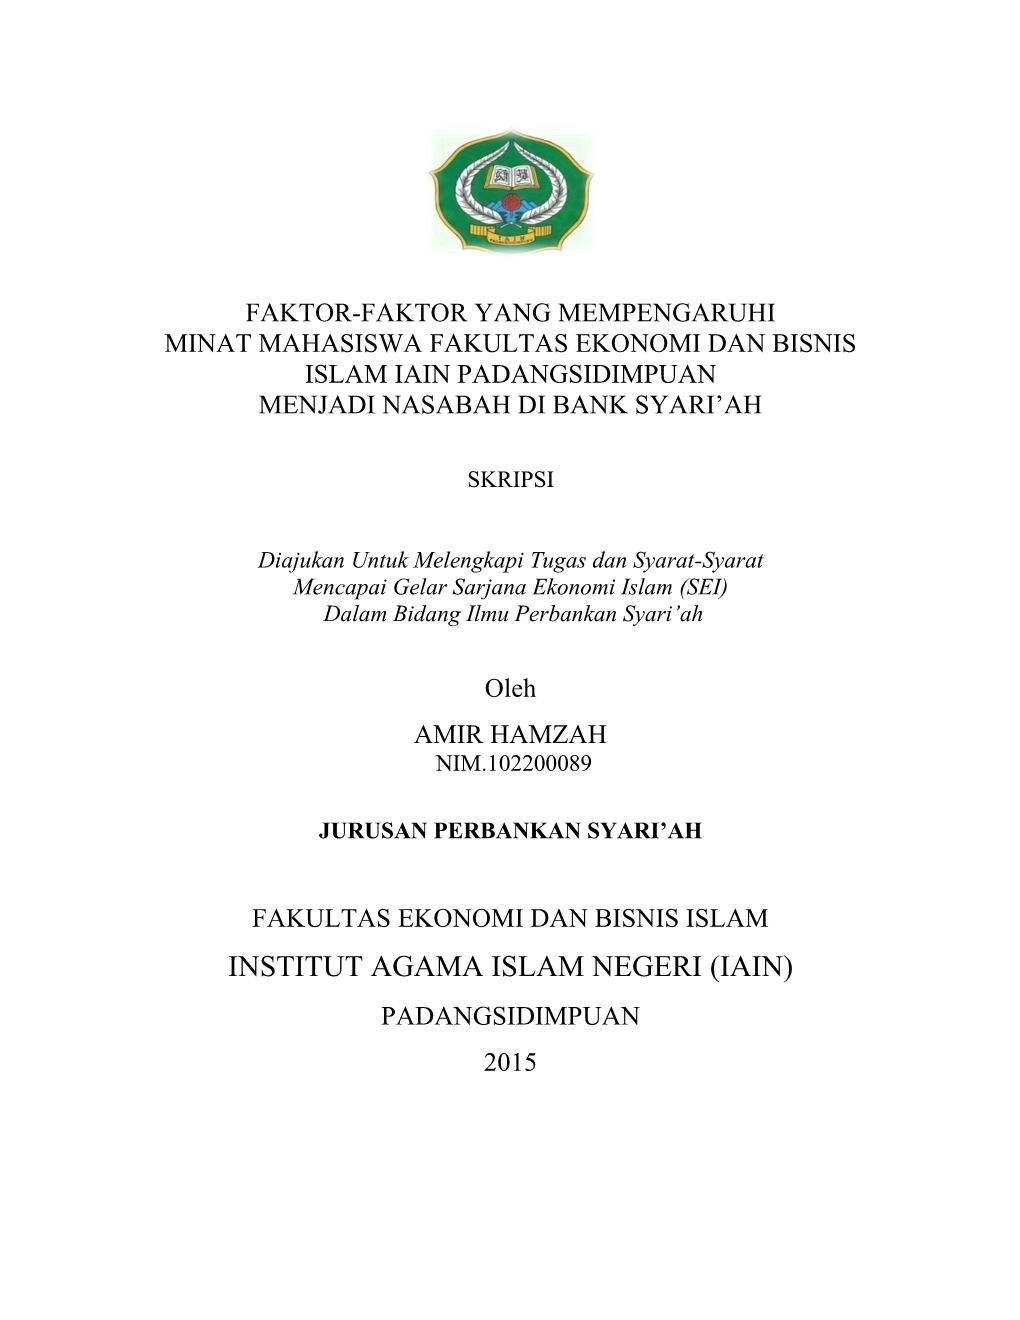 Institut Agama Islam Negeri (Iain) Padangsidimpuan 2015